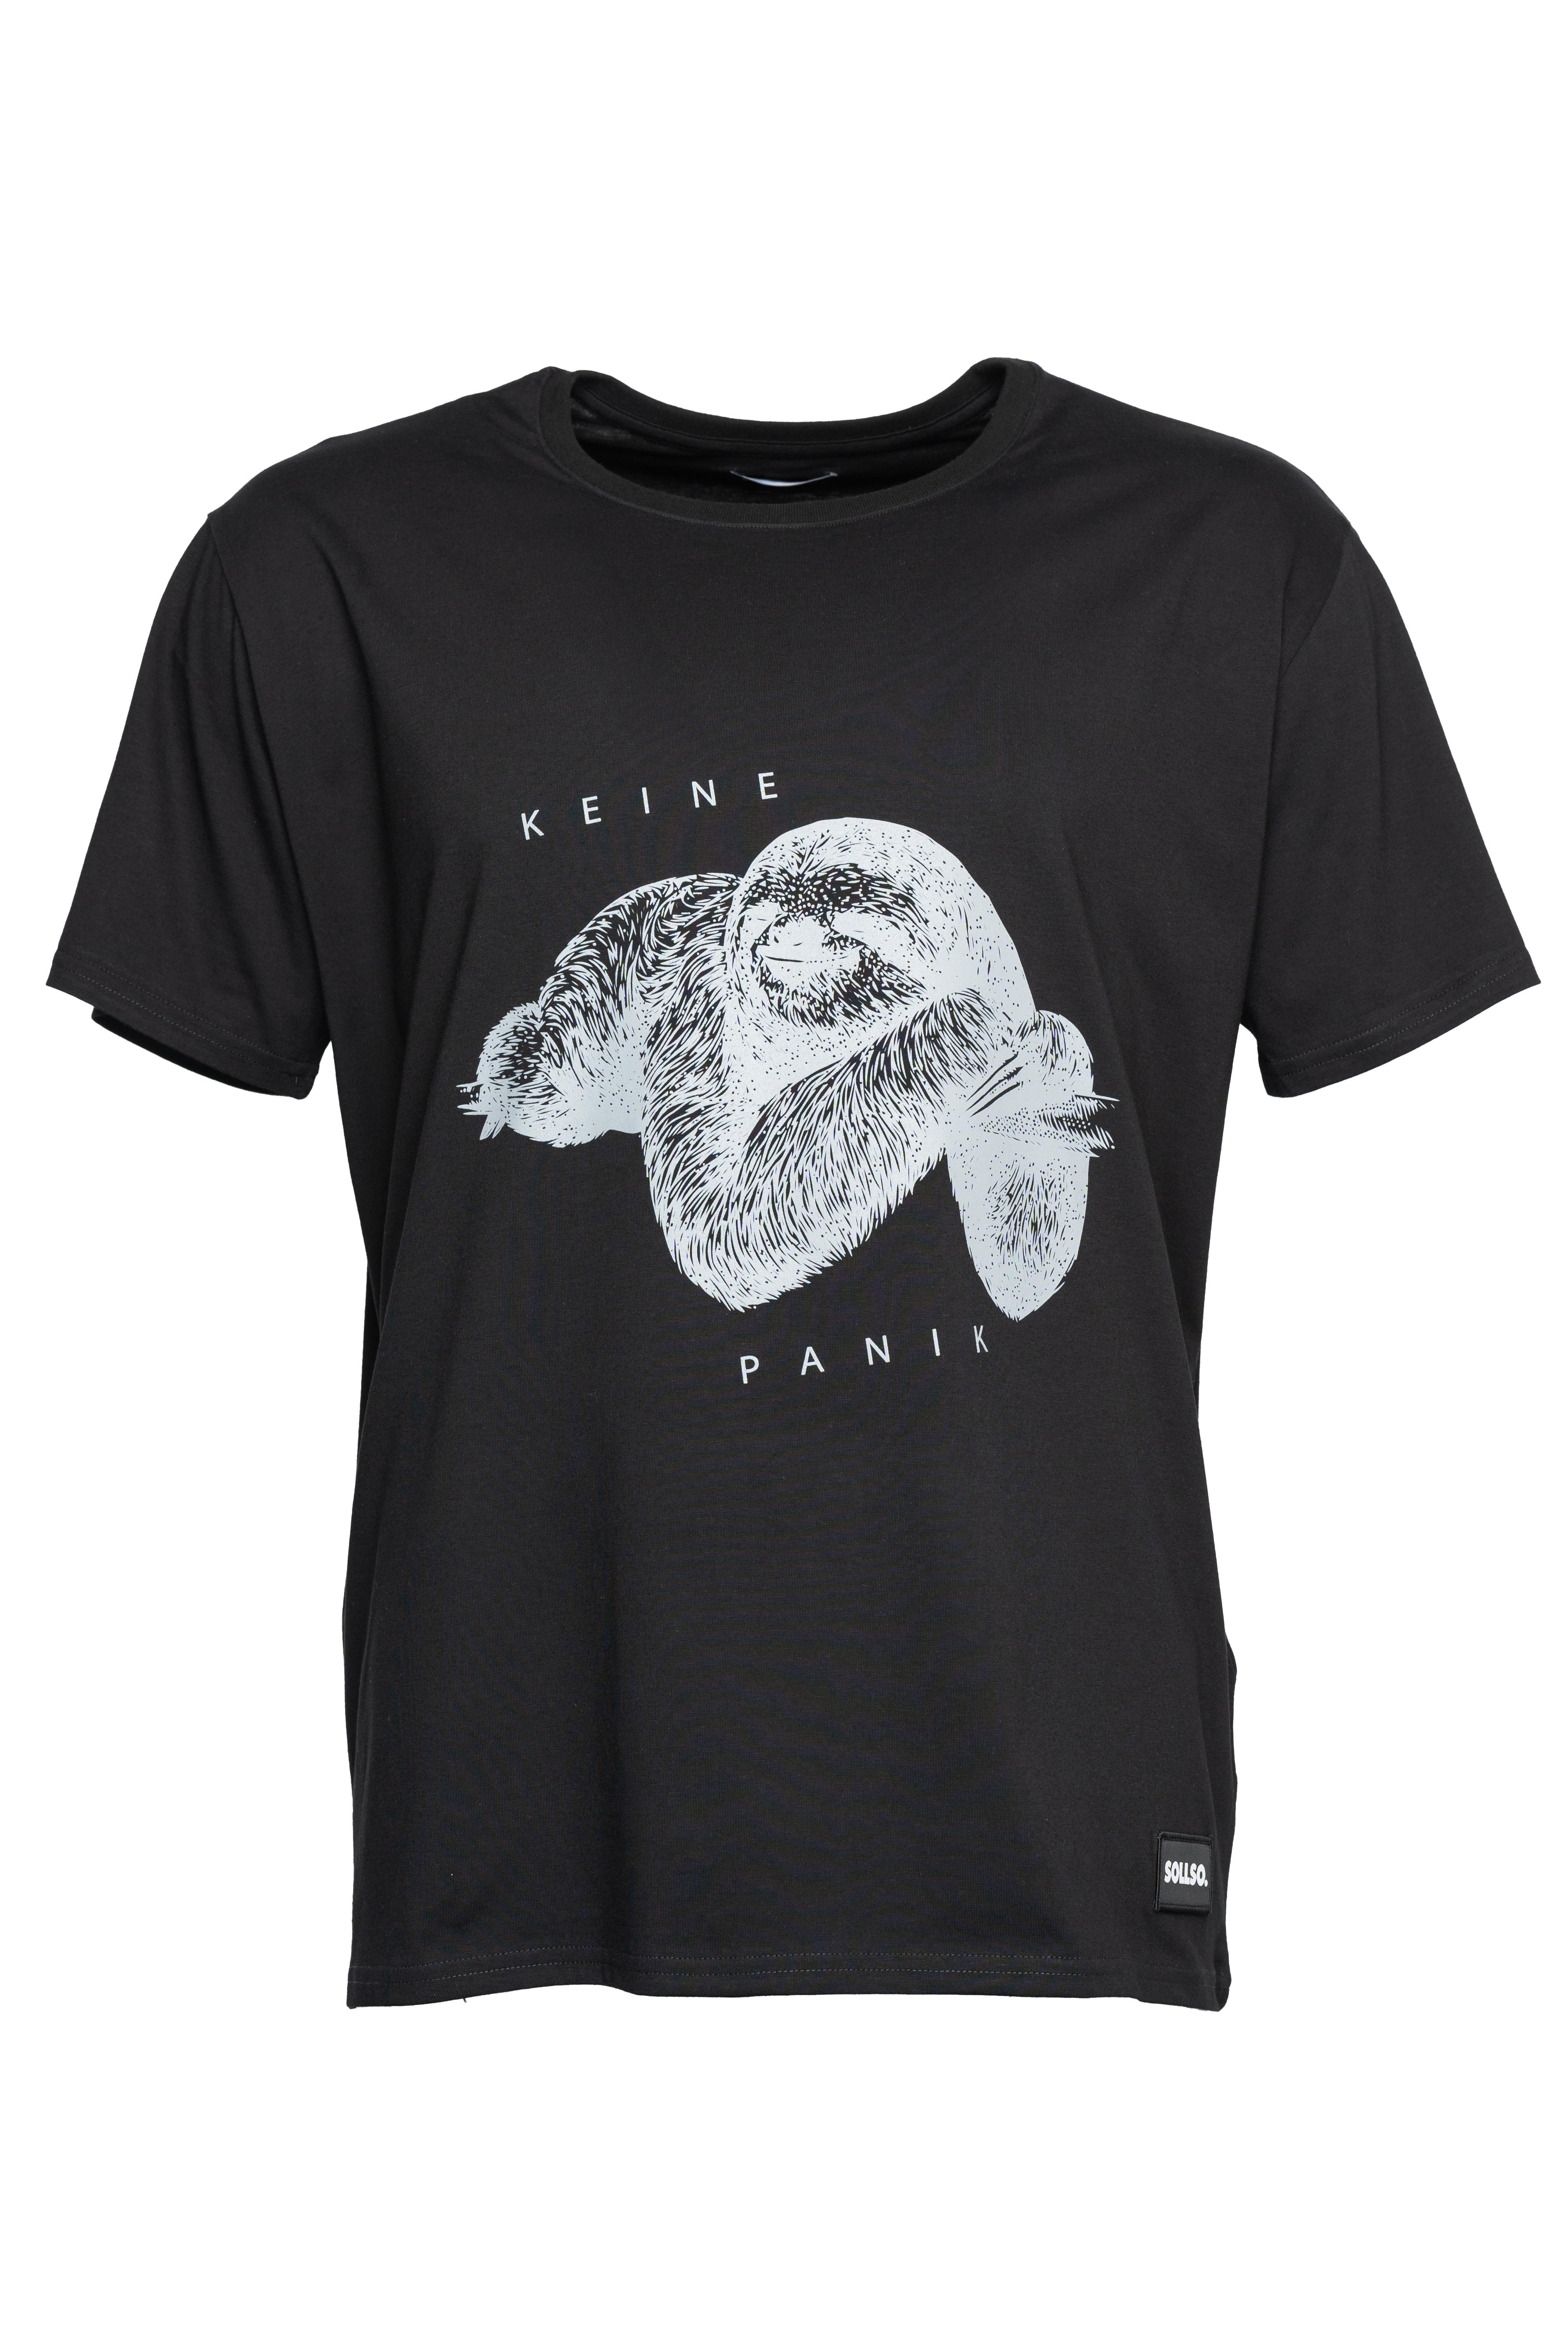 SOLLSO. T-Shirt "Keine Panik Faultier", Farbe Dark Black, Größe 9XL